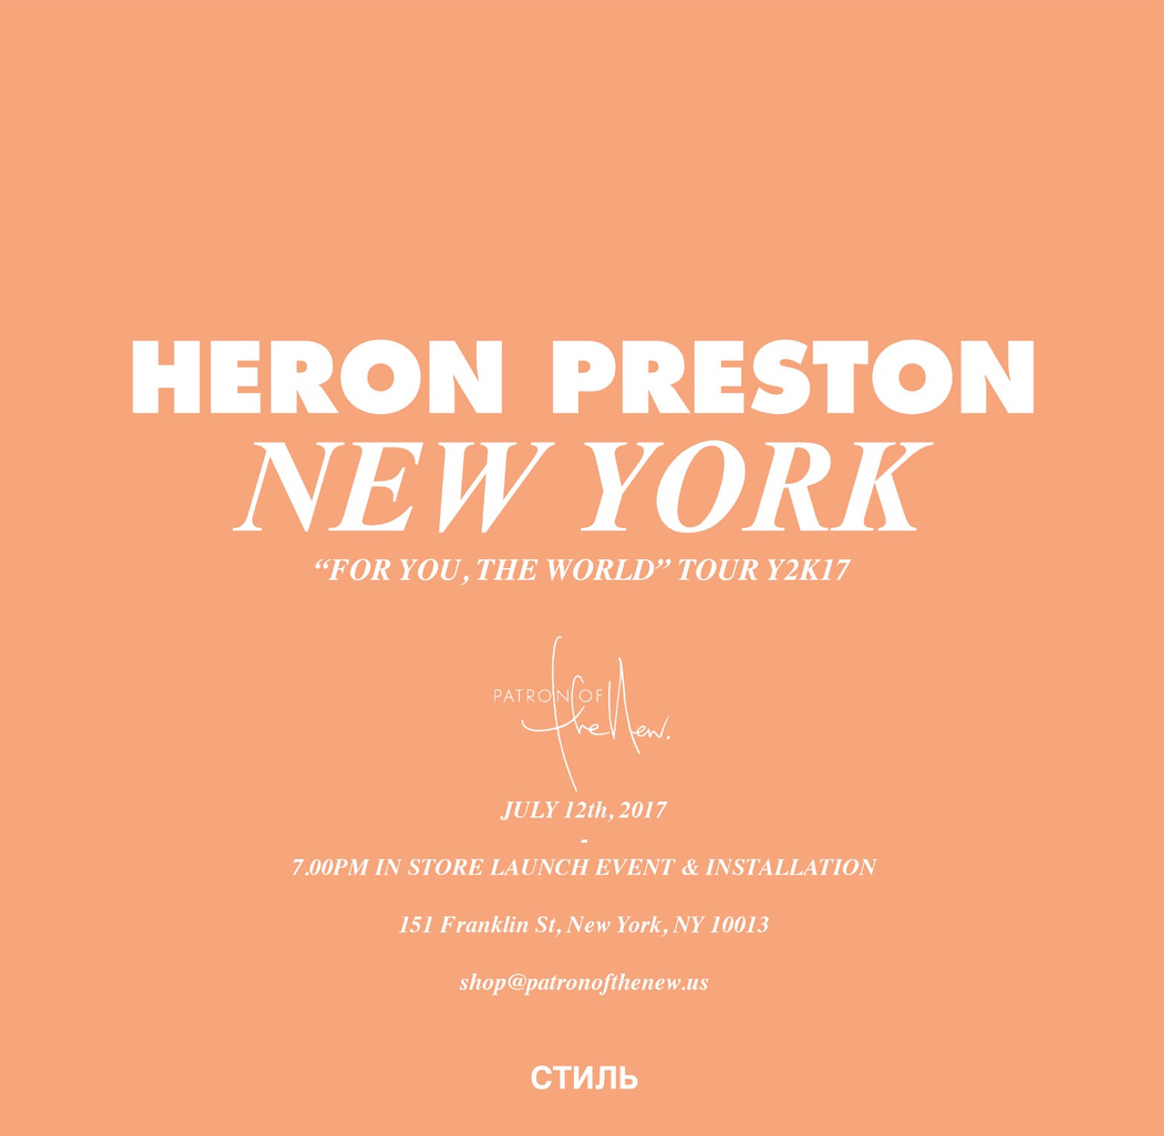 Heron Preston announces NYC pop-up shop